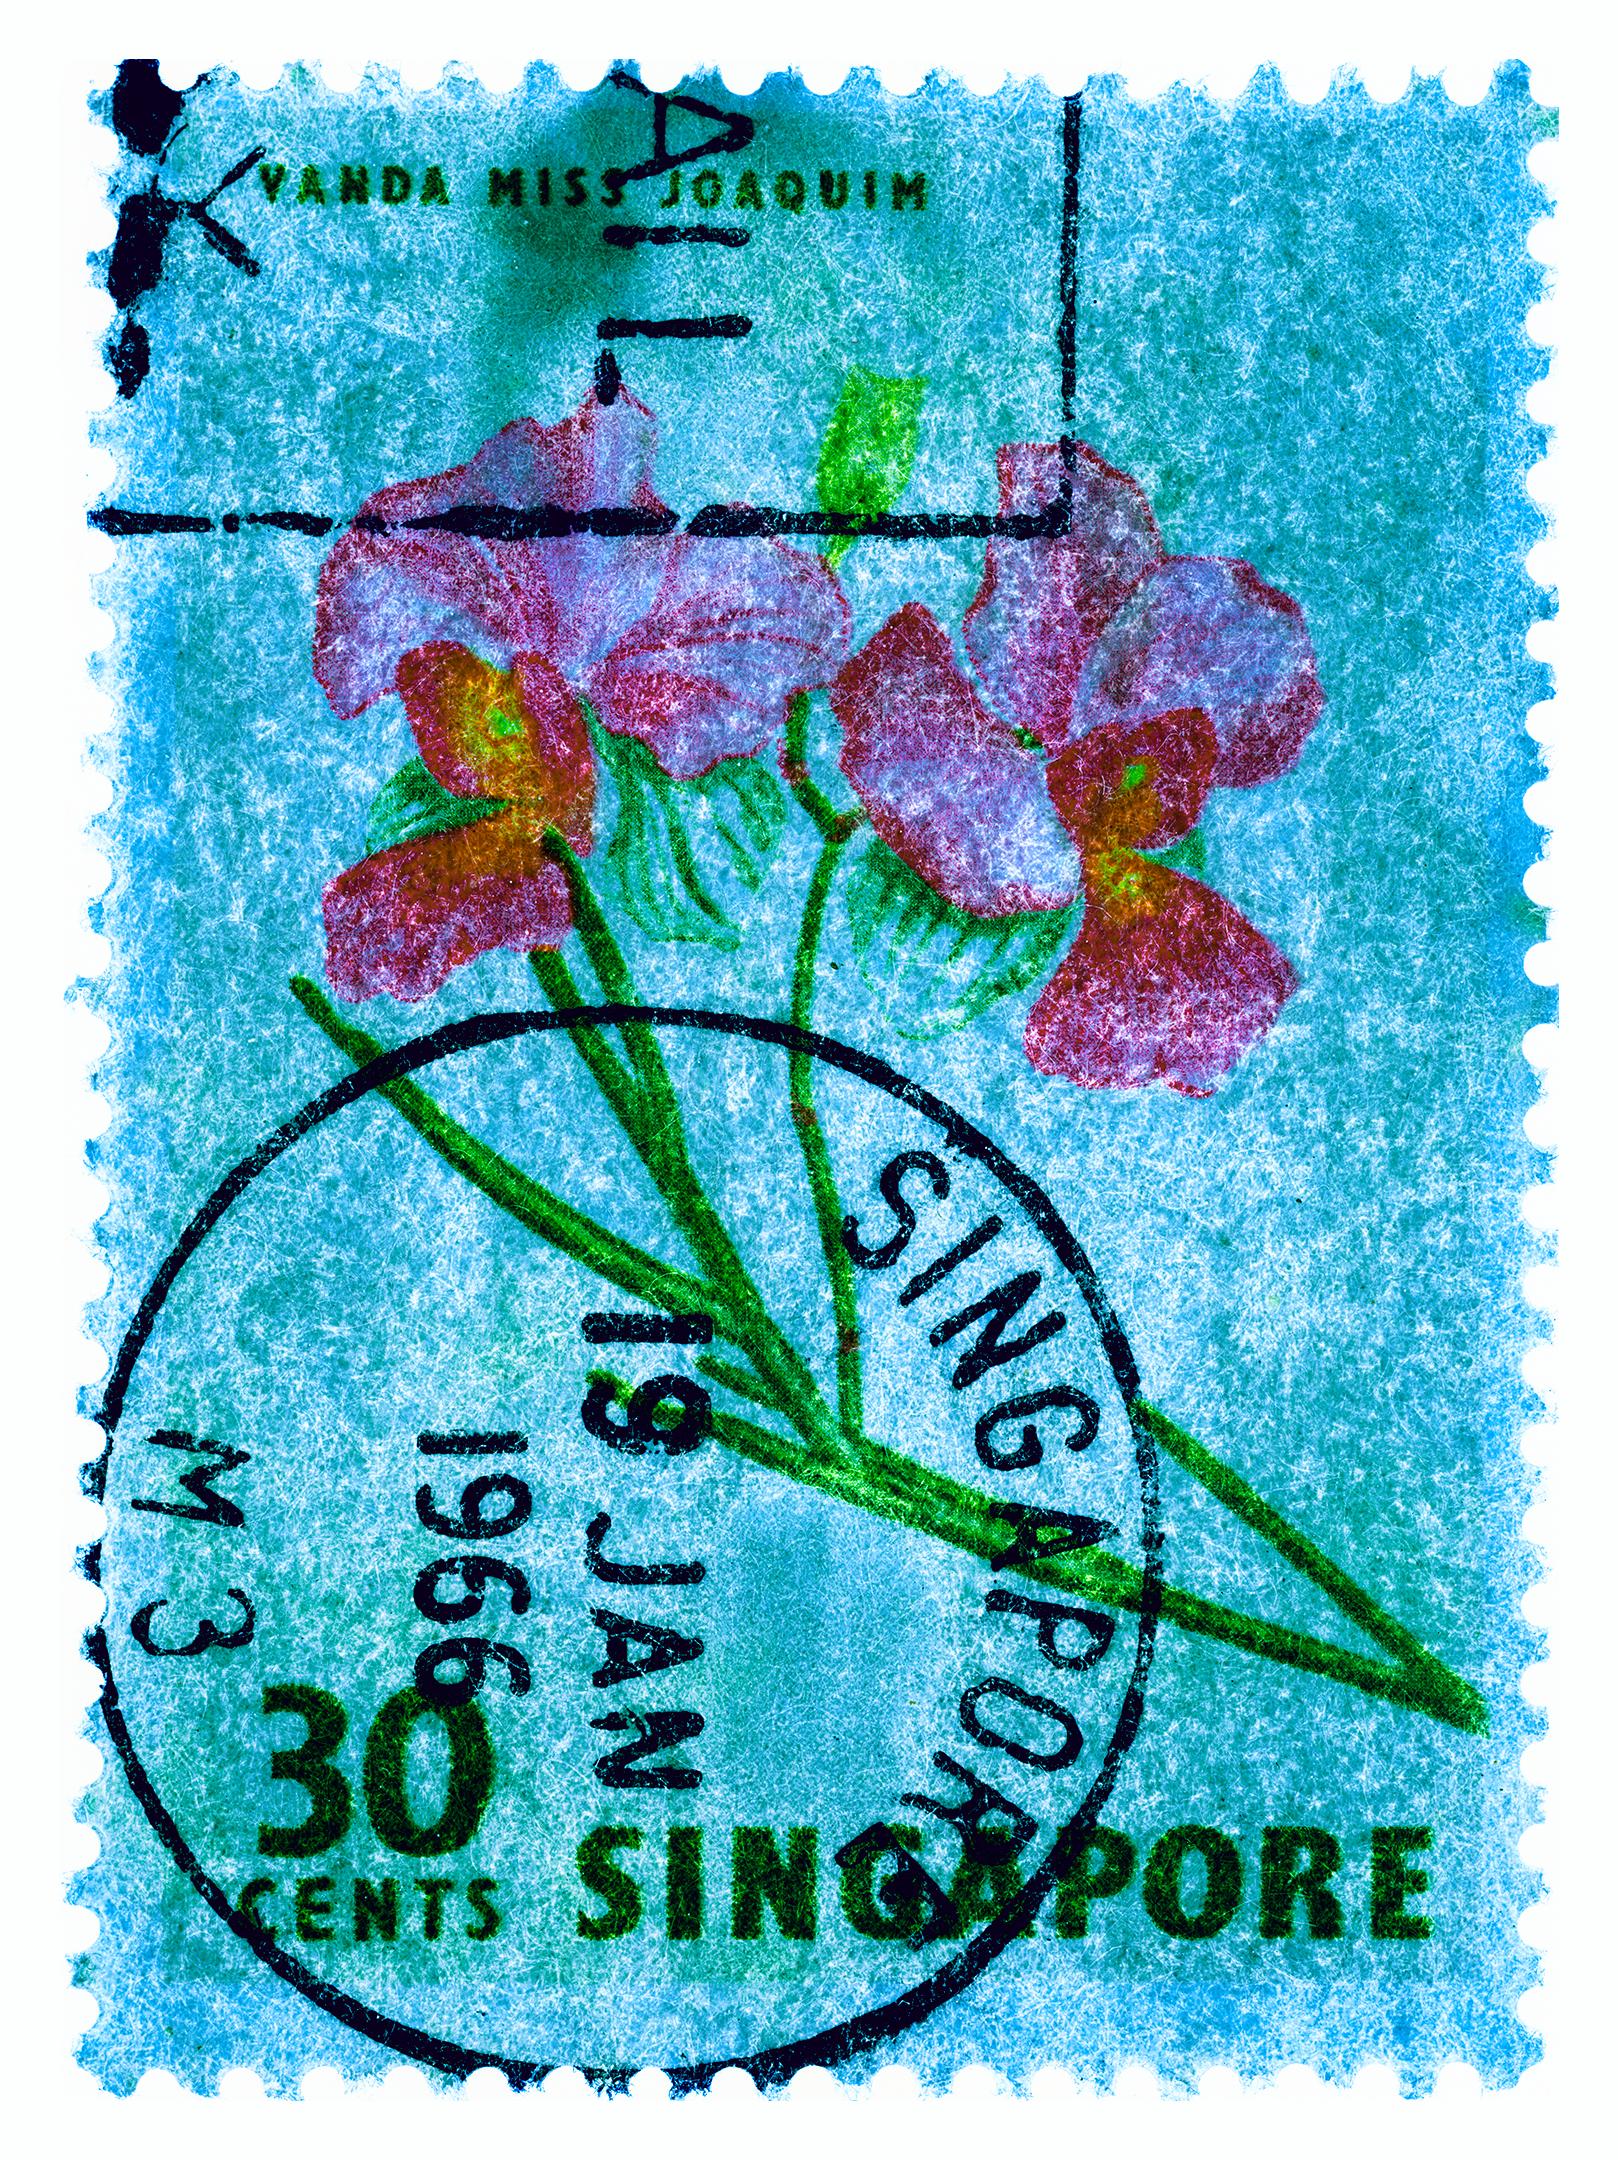 Singapore Stempel-Kollektion, 30c Singapur Vier-Blumen-Farbfoto (Konzeptionell), Print, von Heidler & Heeps